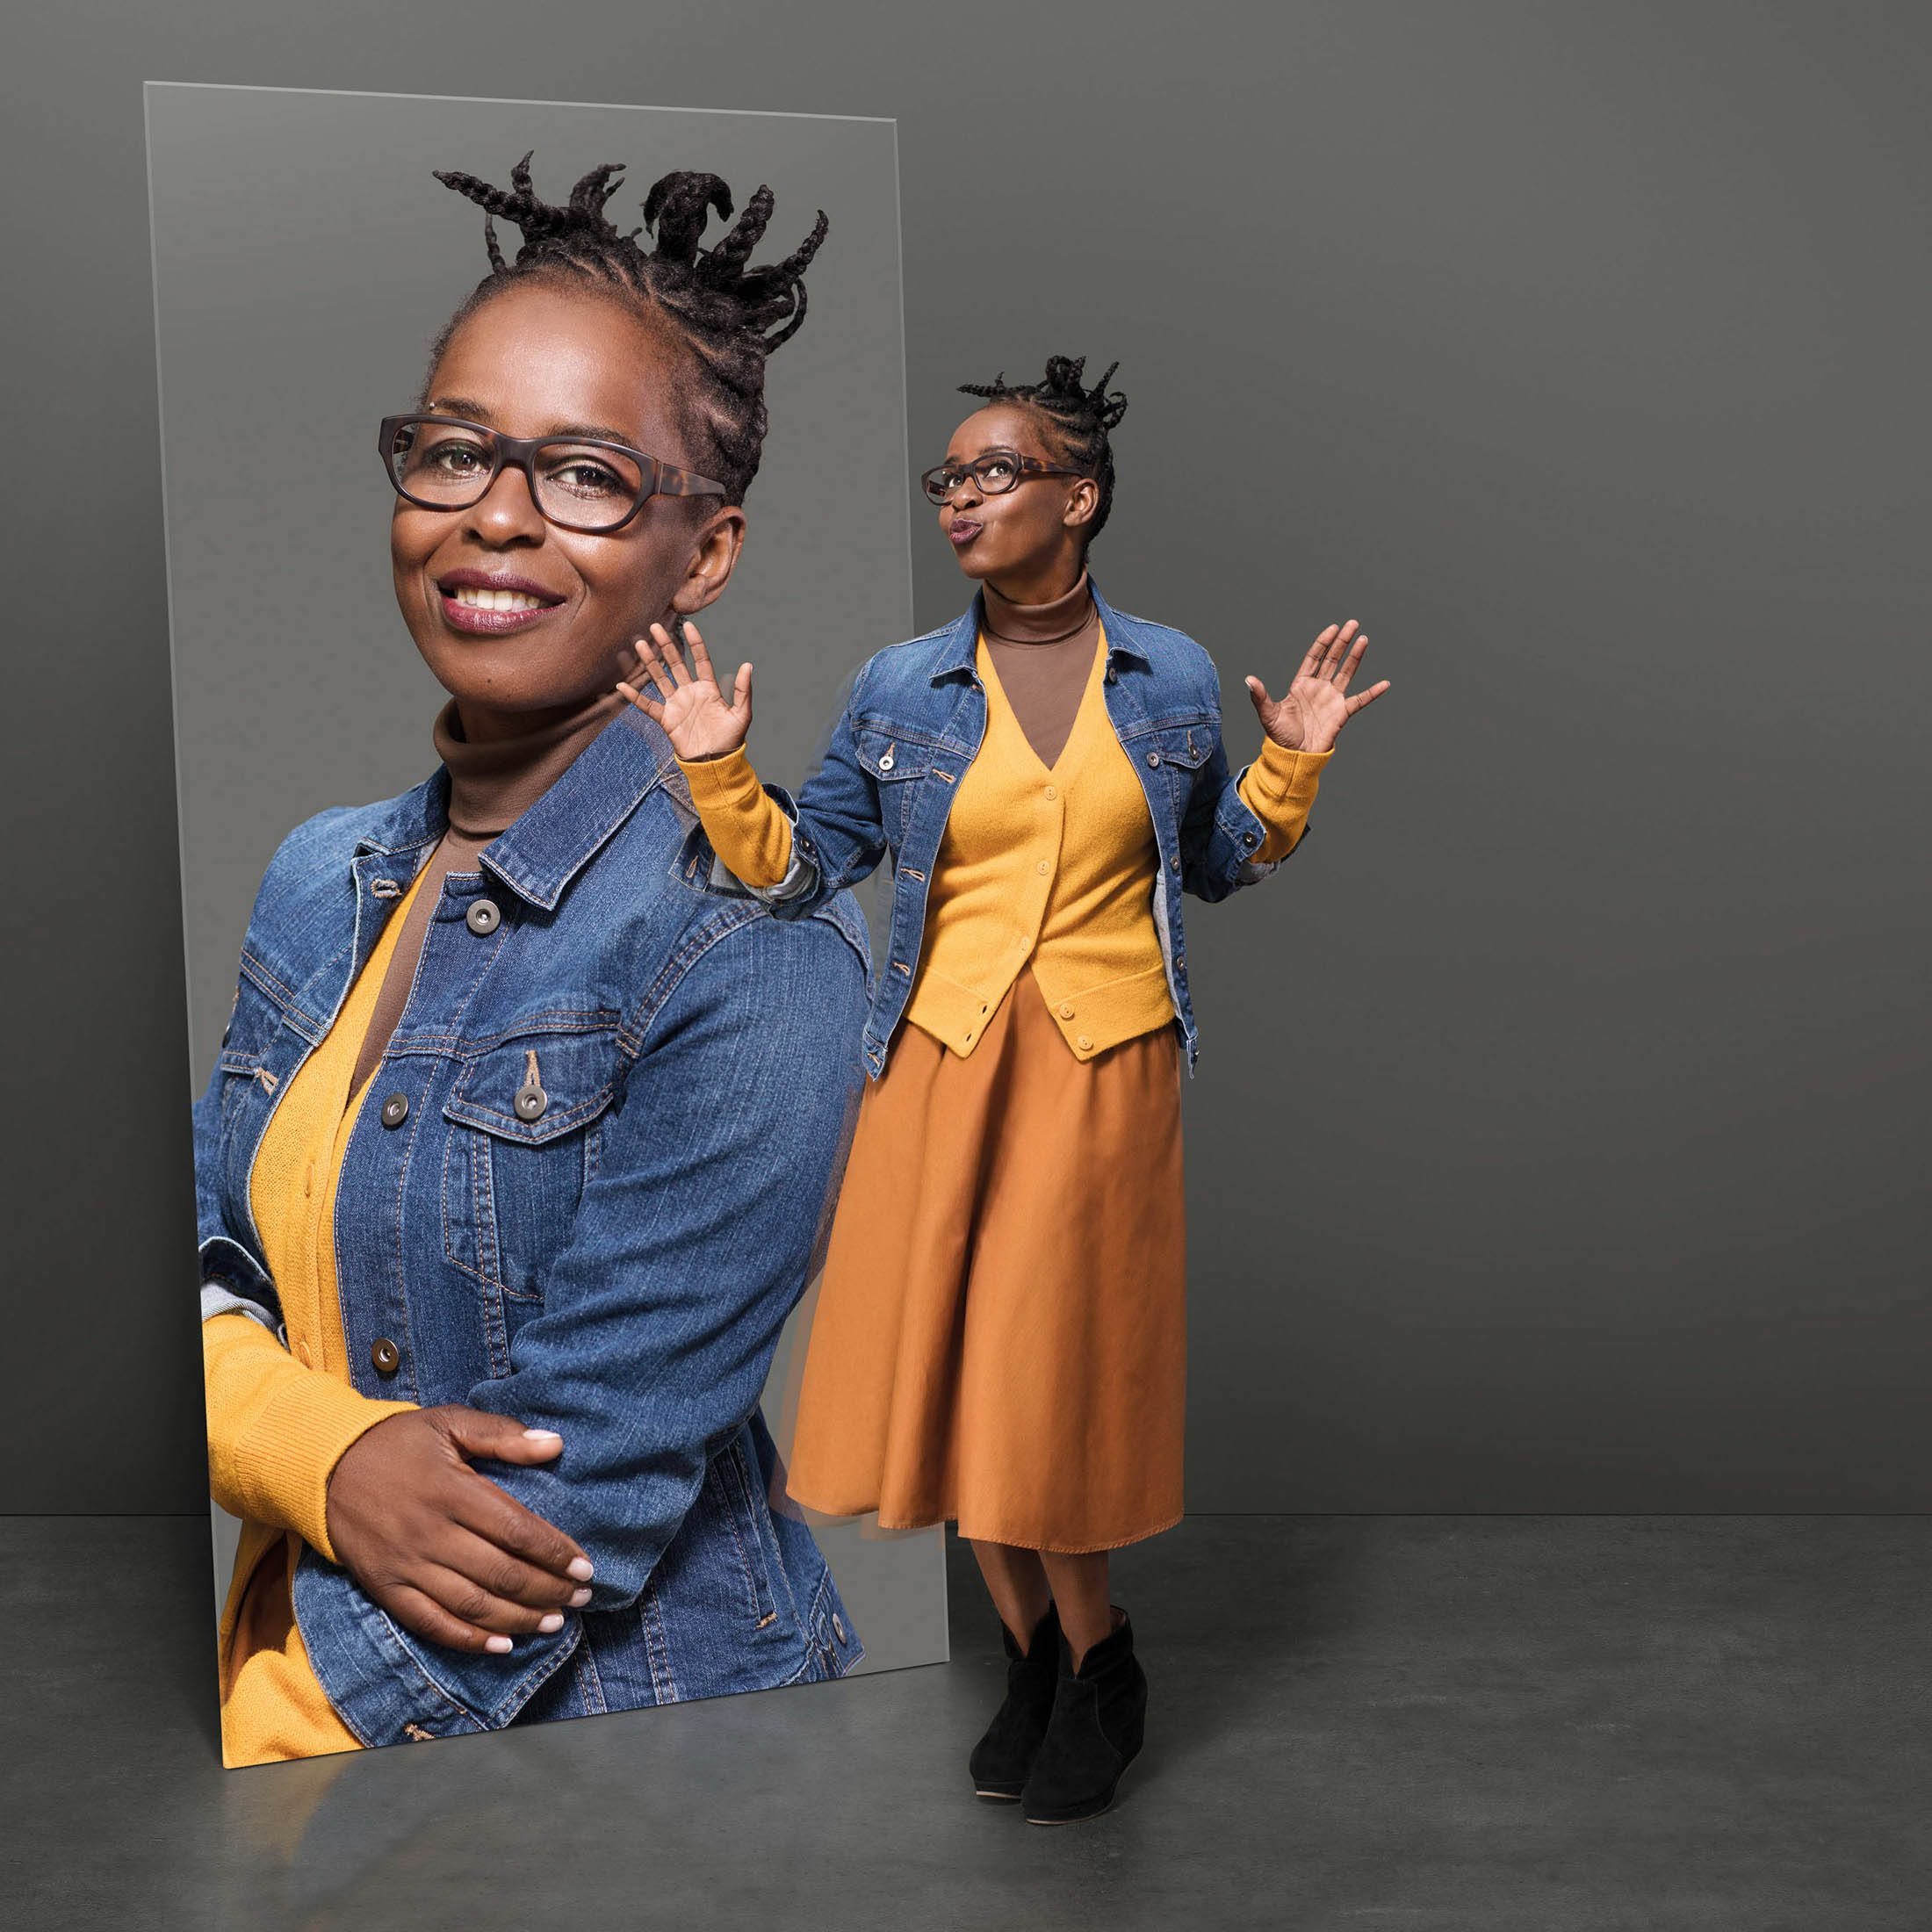 Eine lächelnde schwarze Frau mit Brille und gestyltem Haar ist in einem Doppelporträt zu sehen. Im Hintergrund posiert sie mit erhobenen Händen, während der Vordergrund auf ihr Gesicht fokussiert ist, alles vor einem grauen Hintergrund. © Fotografie Tomas Rodriguez